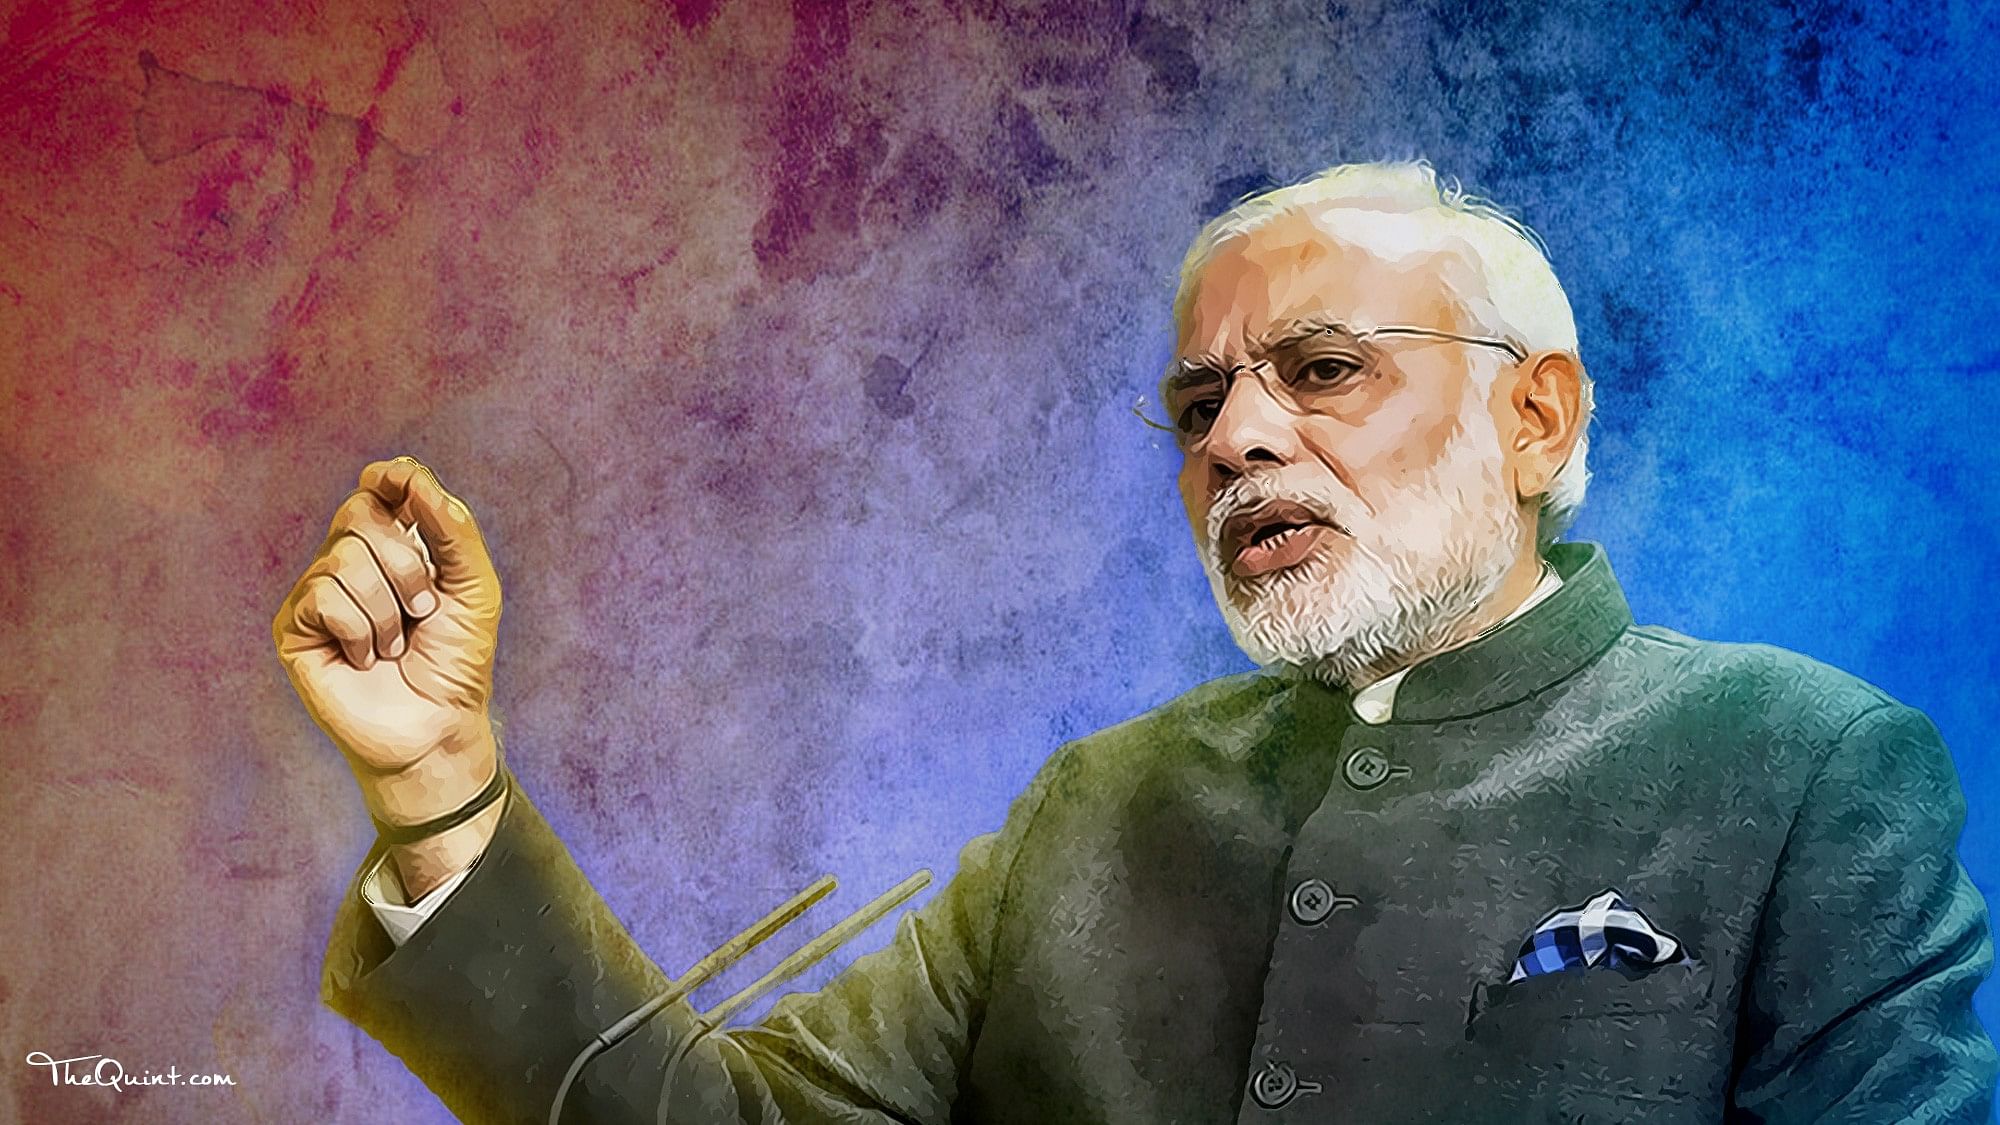 Image of PM Narendra Modi used for representational purposes.